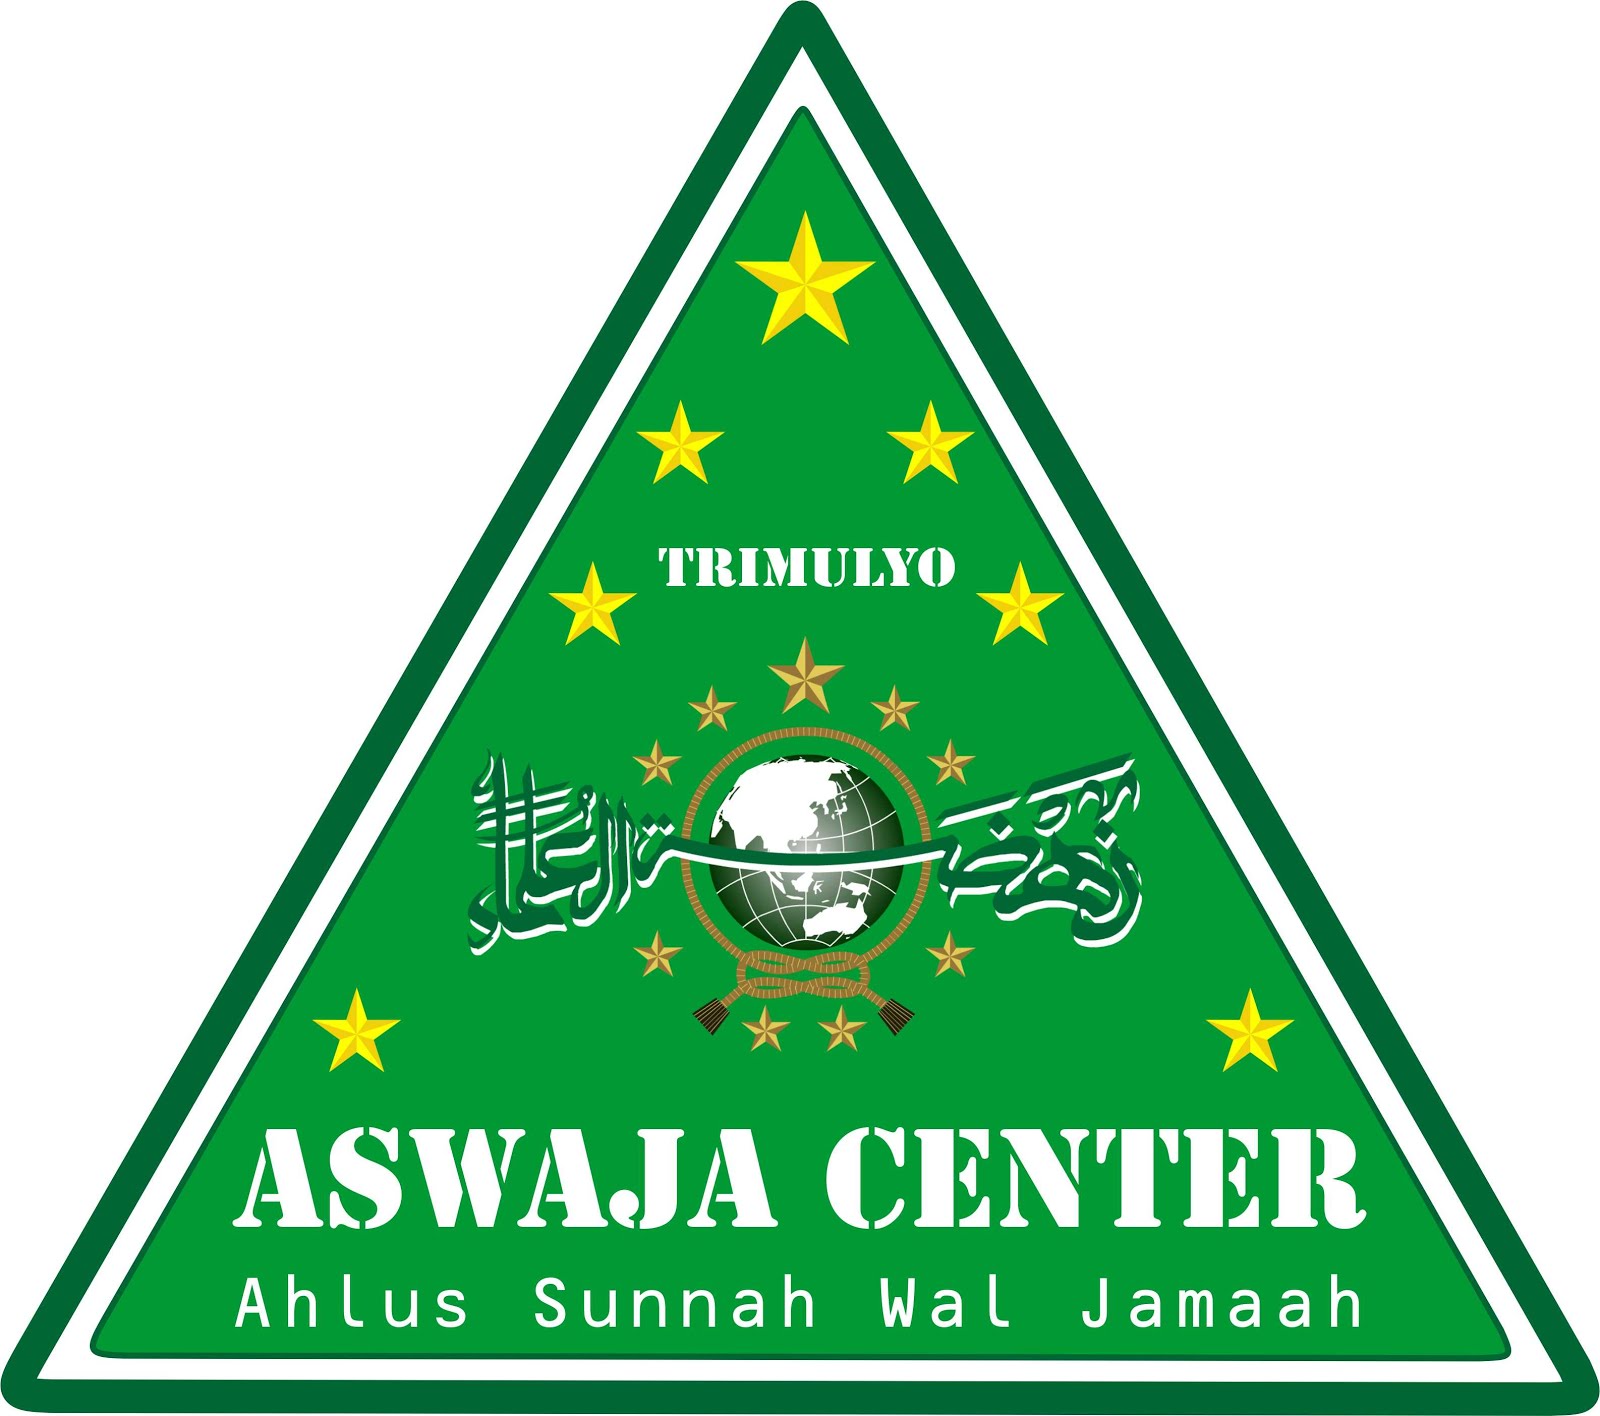 aswaja center